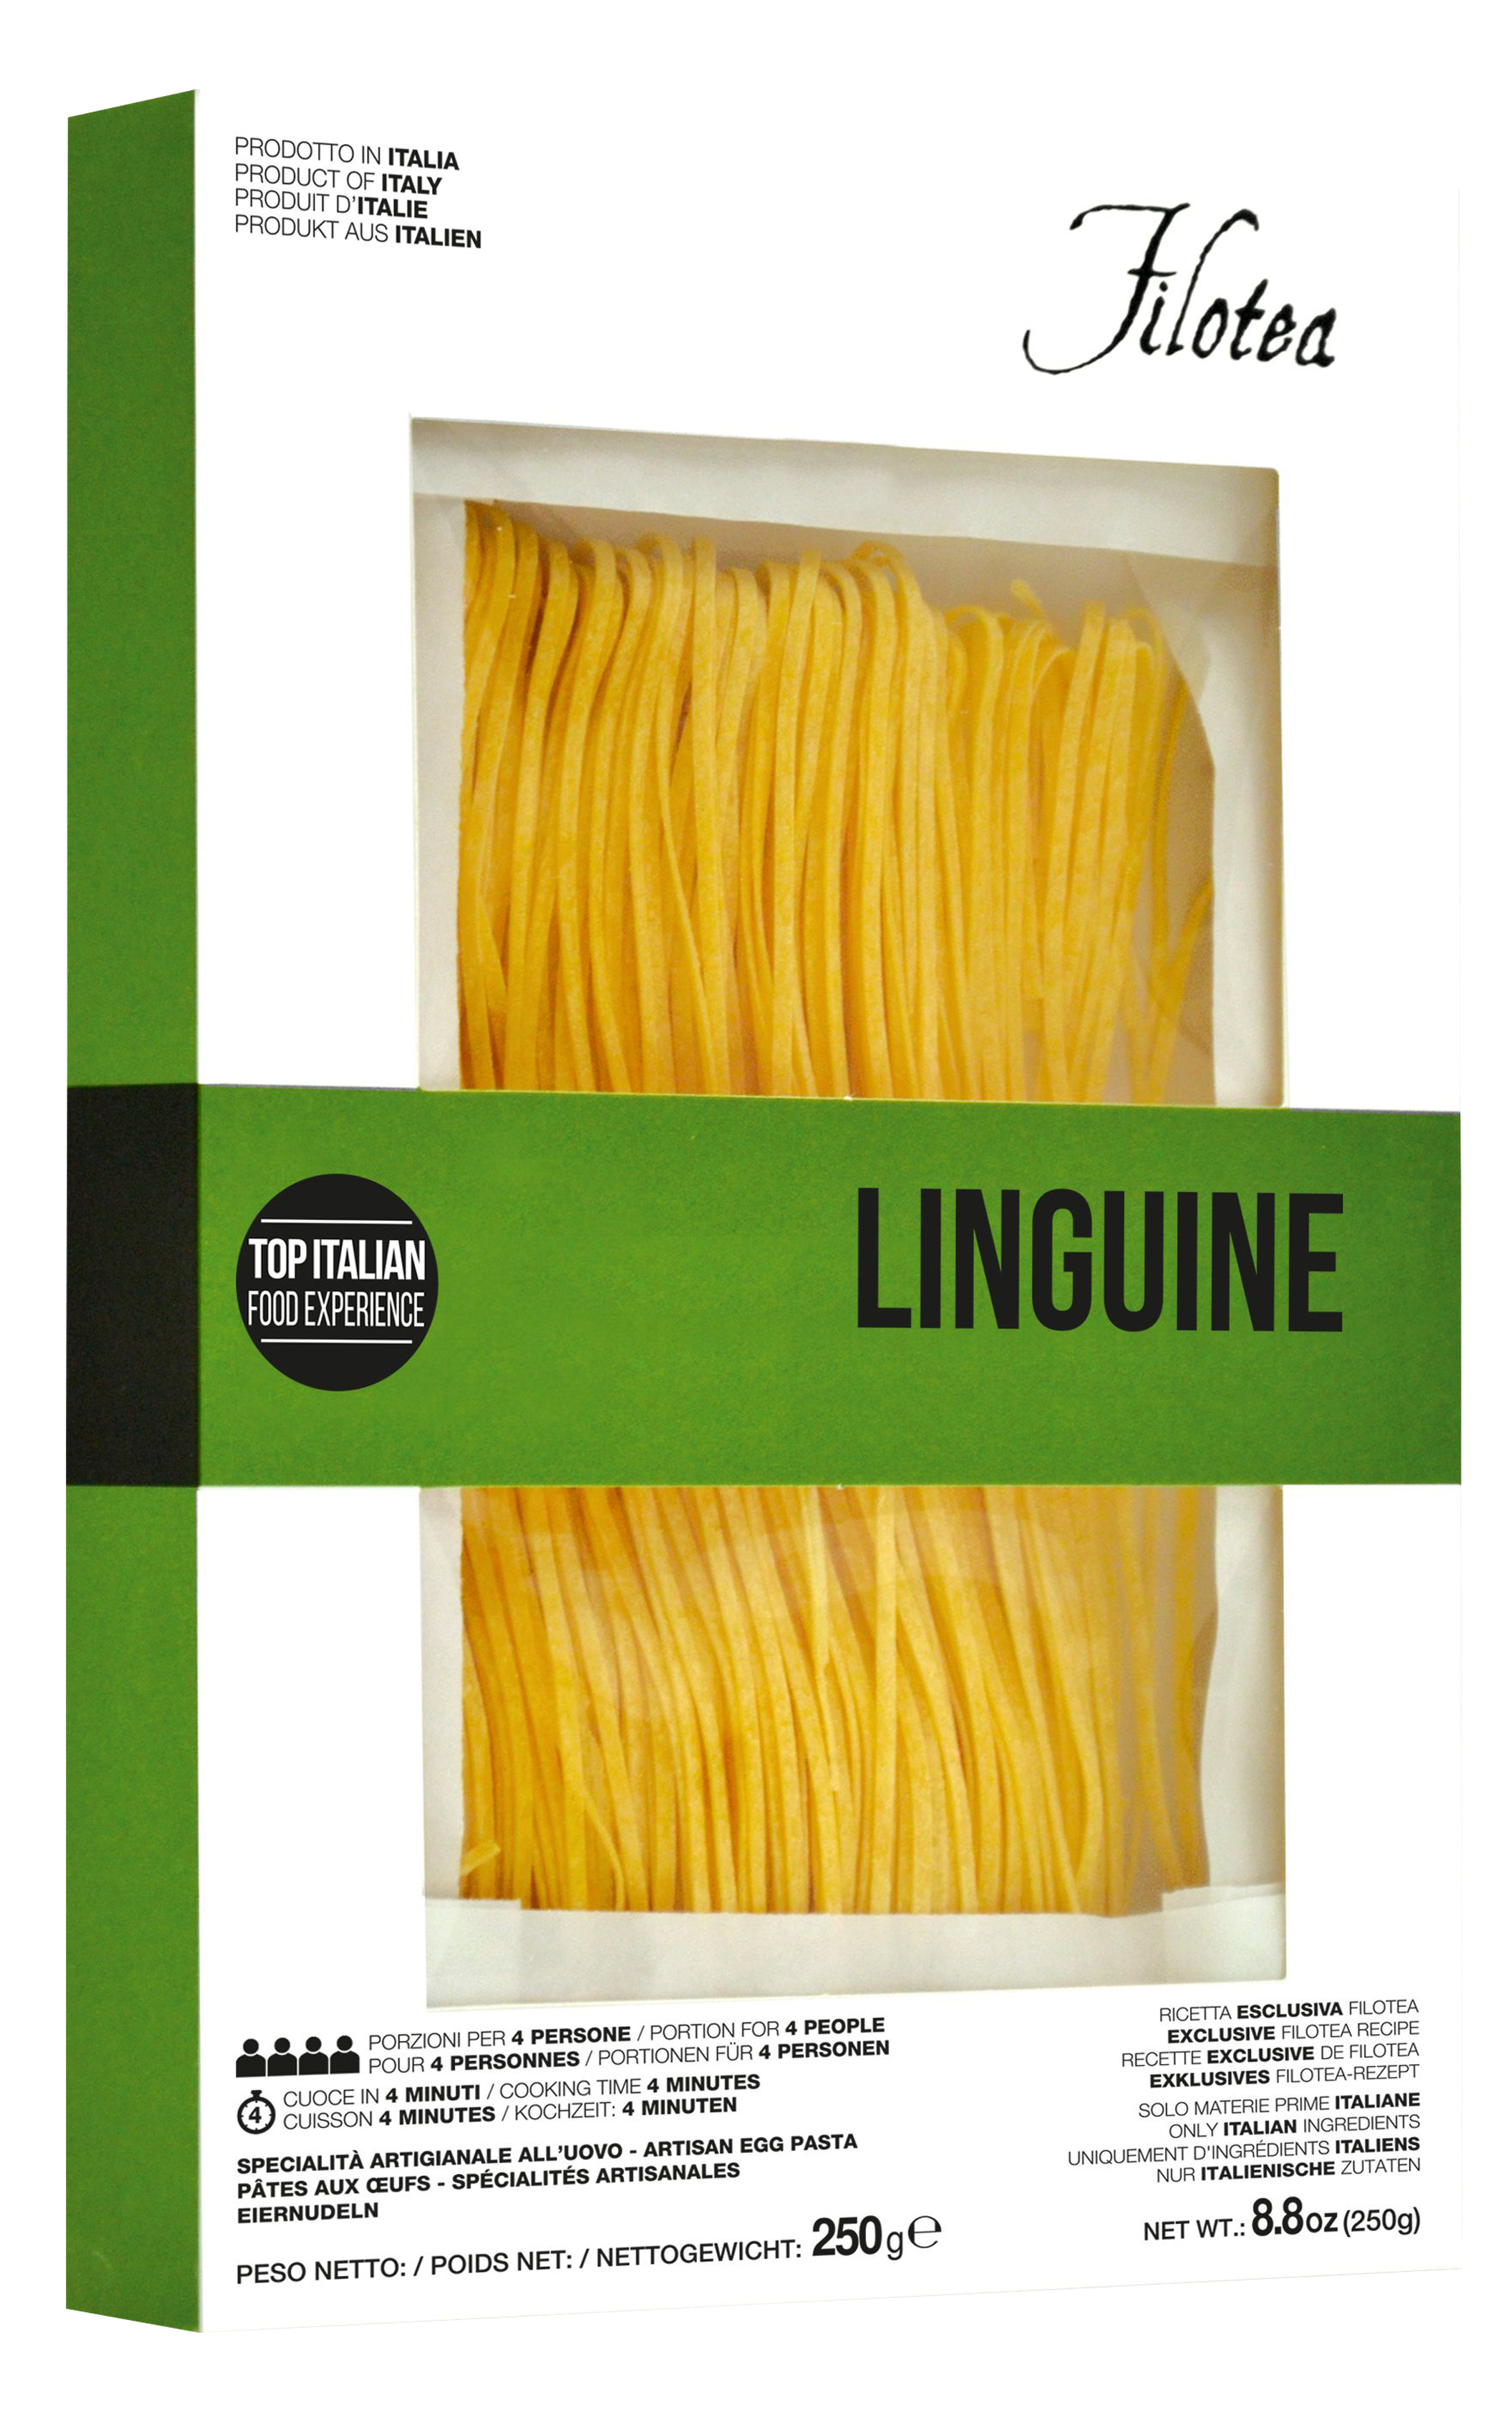 Linguine, Bandnudel, schmal, 250 g